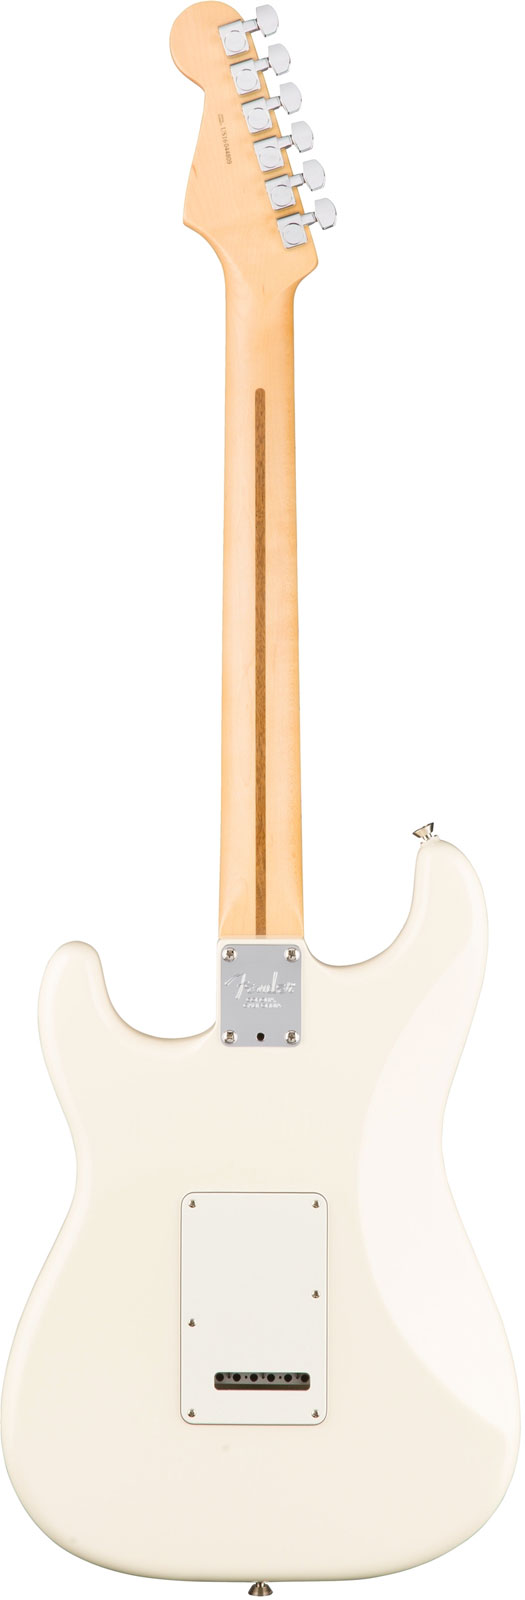 Fender Strat American Professional 2017 3s Usa Mn - Olympic White - Elektrische gitaar in Str-vorm - Variation 2